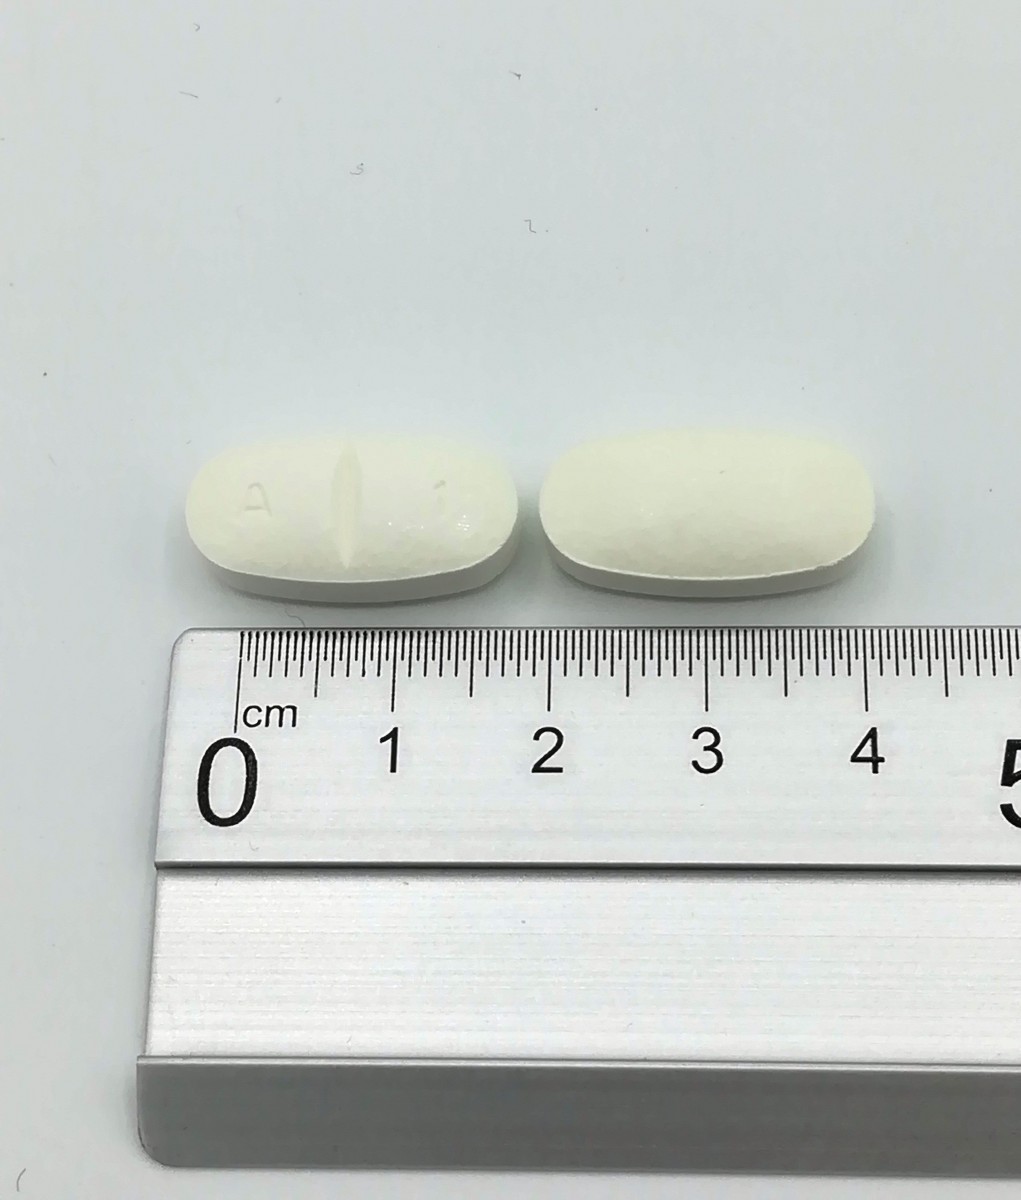 AMOXICILINA NORMON 1000 MG COMPRIMIDOS EFG  , 30 comprimidos fotografía de la forma farmacéutica.